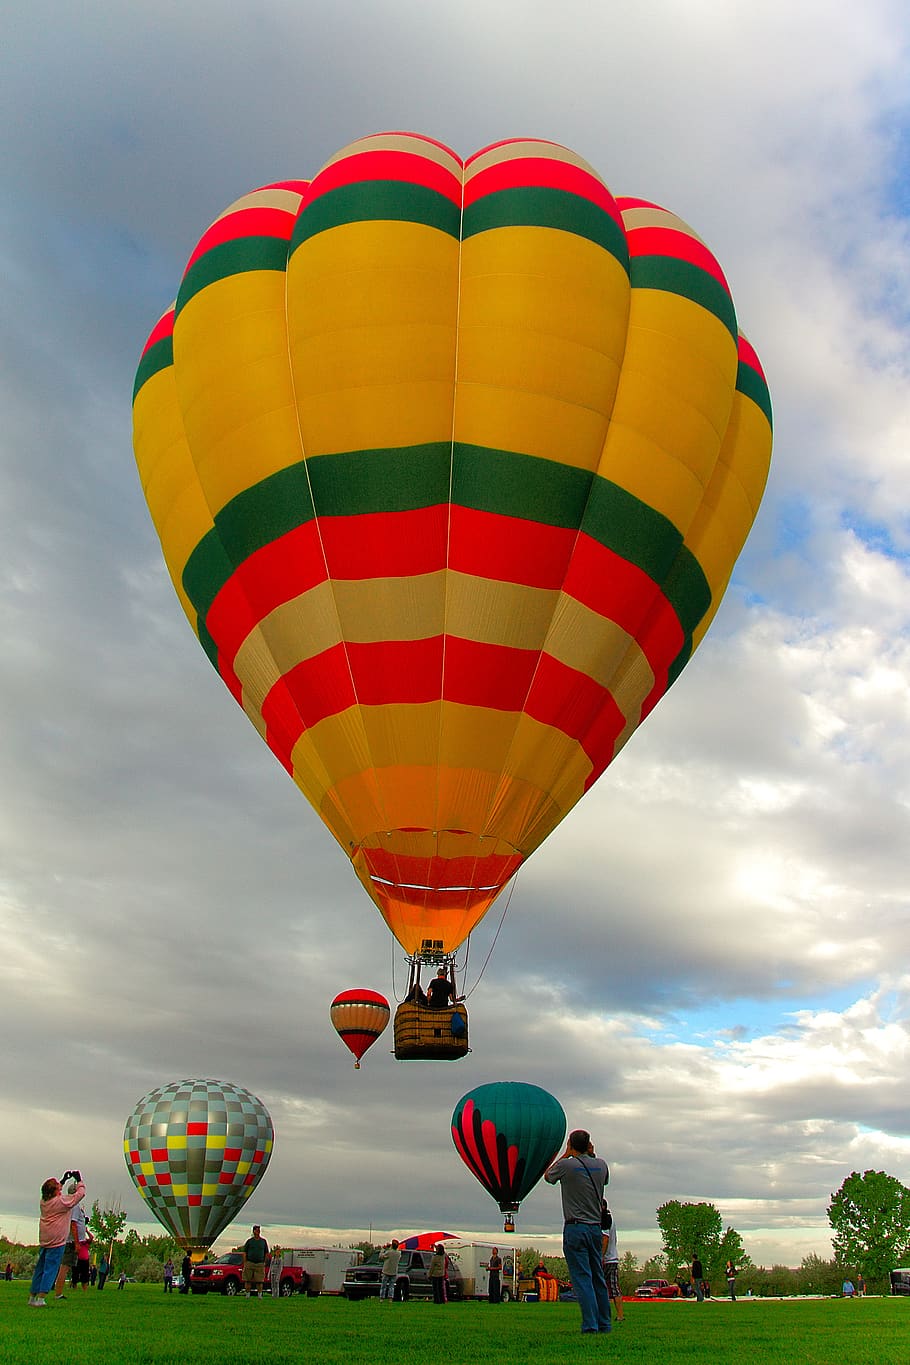 balão, voador, reunião de balão, voo, balão de ar quente, aventura, fotografia, céu, nuvem - céu, veículo aéreo